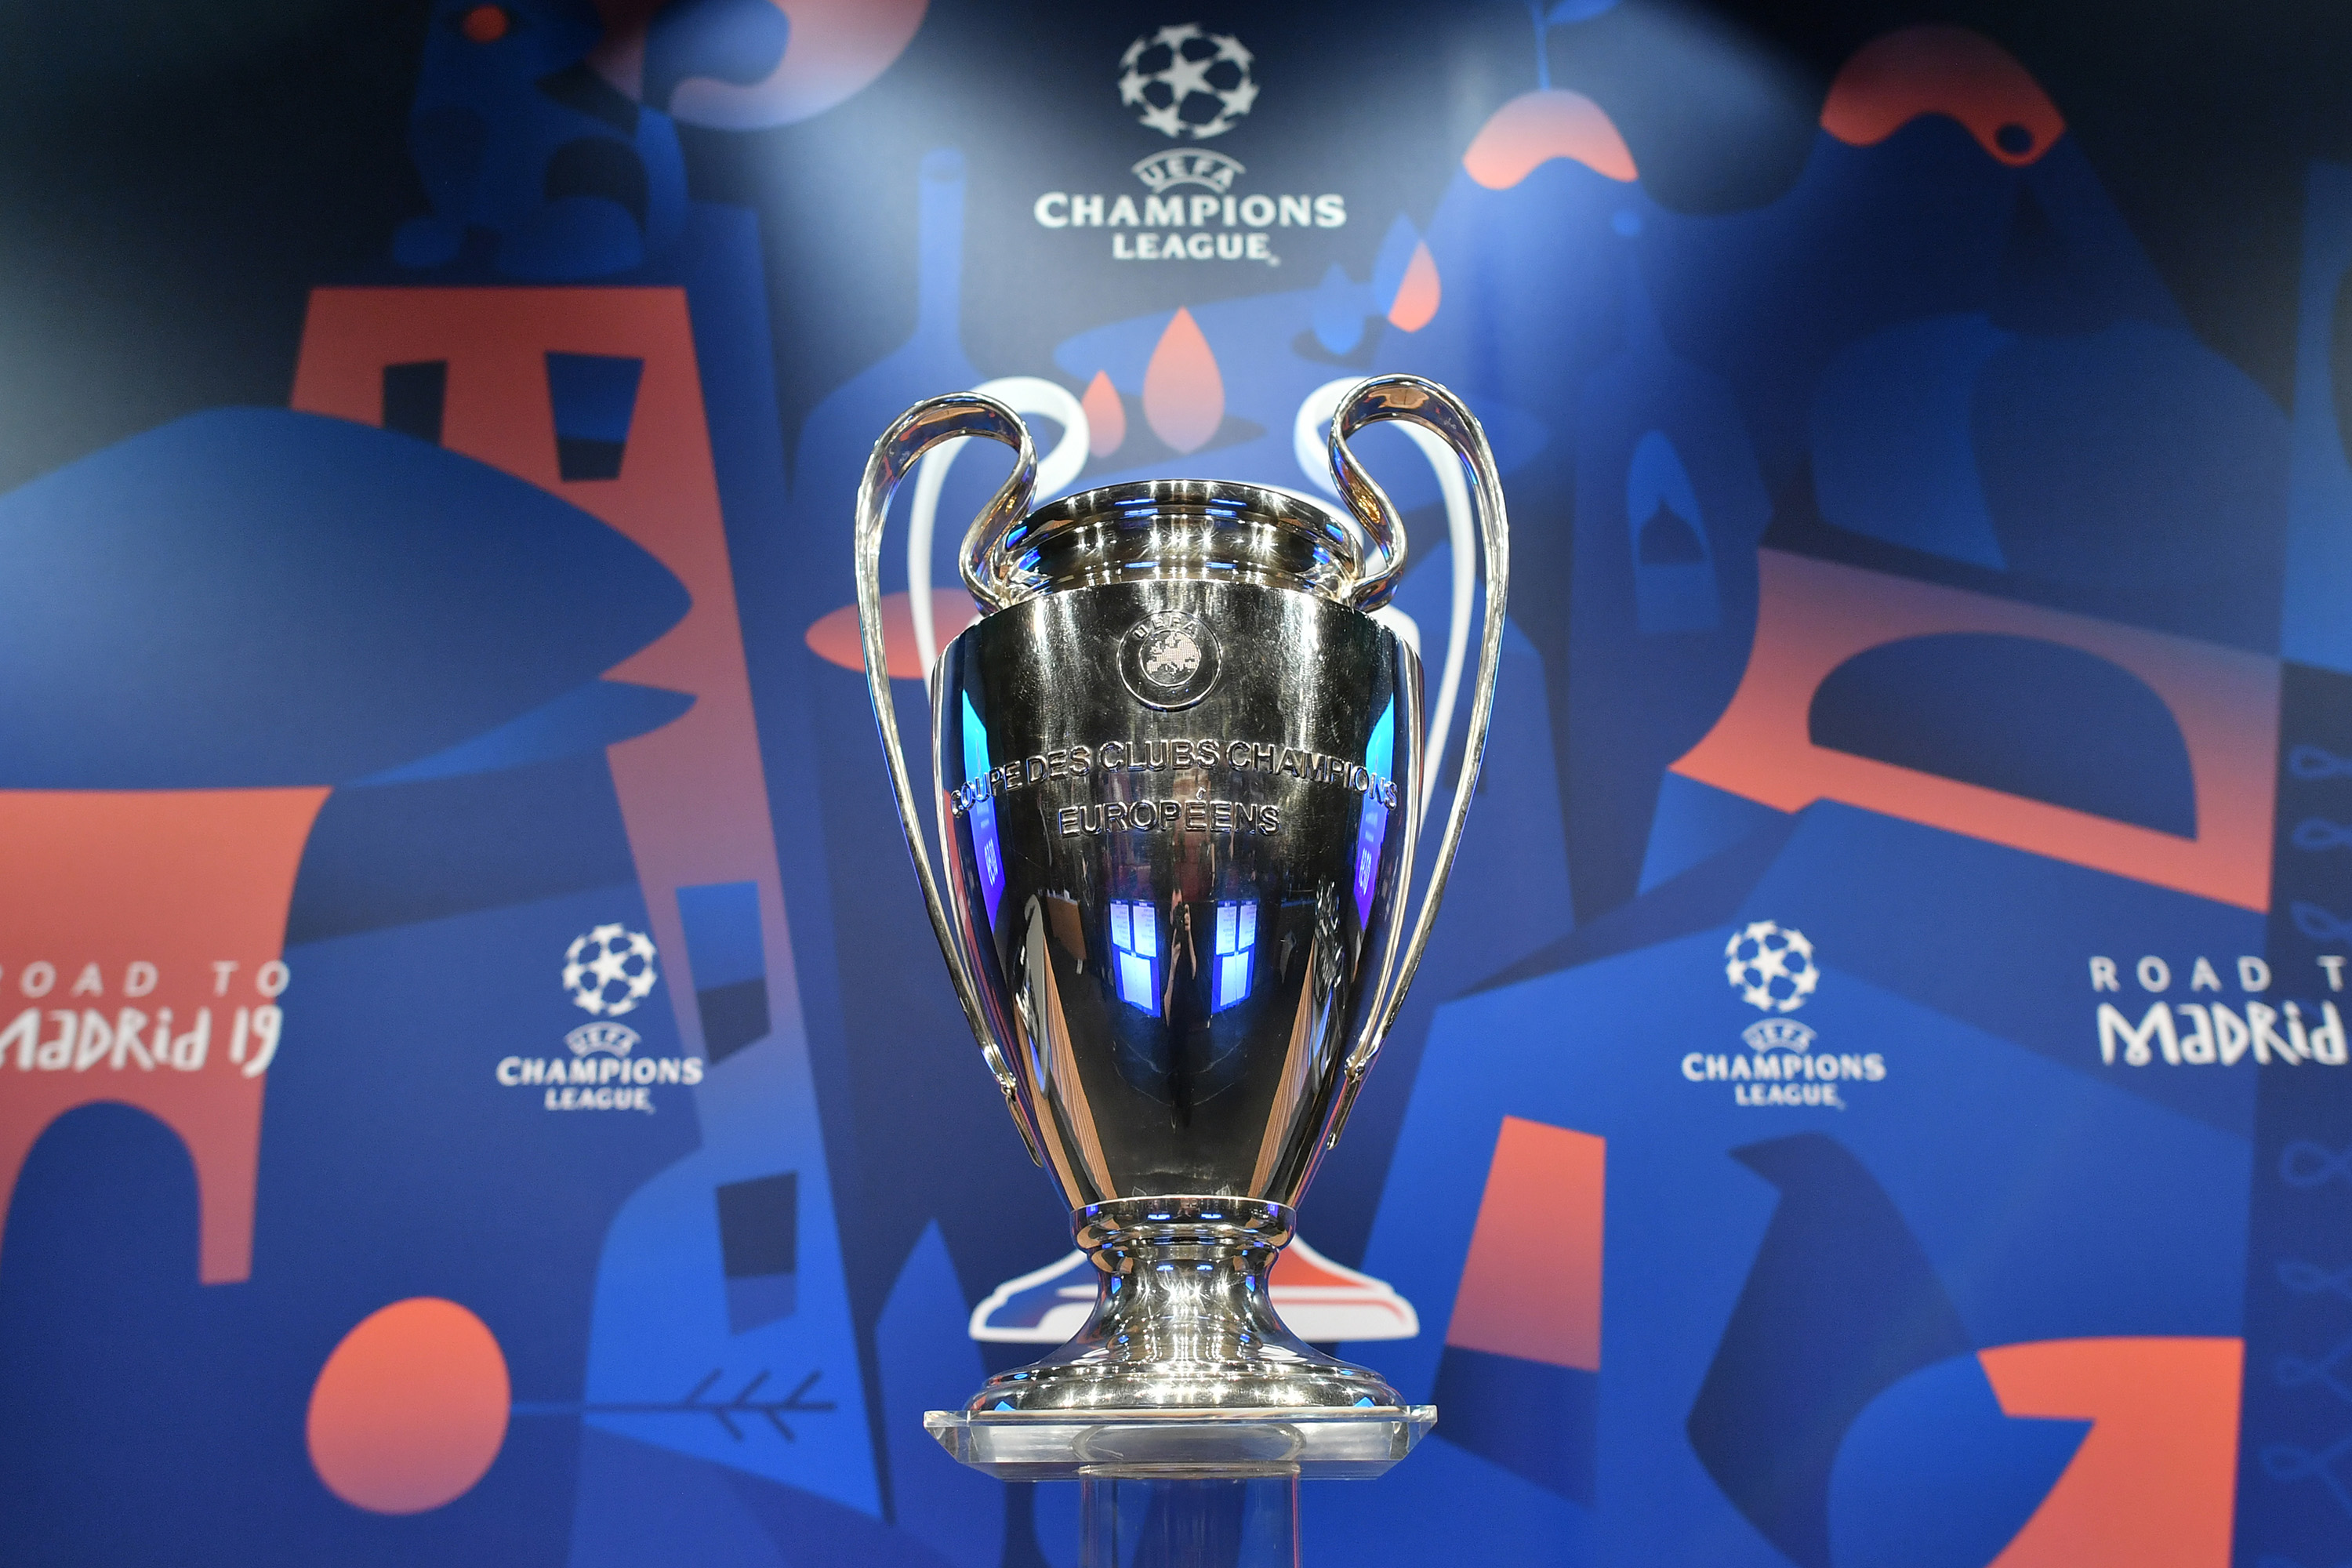 Uefa e times europeus discutem mudanças radicais na Champions